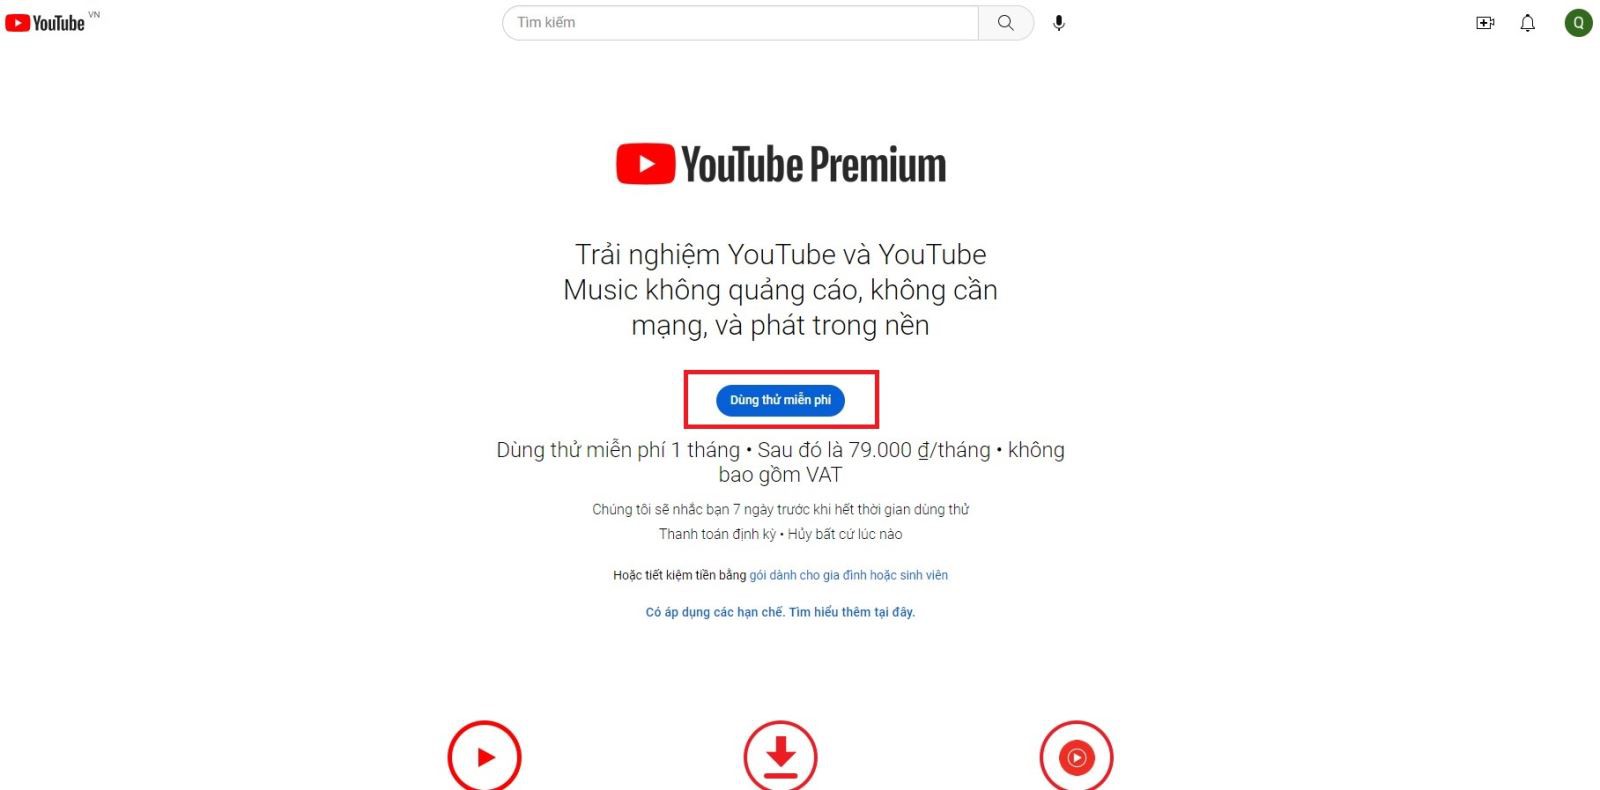 Hướng dẫn đăng ký YouTube Premium tại Việt Nam 2